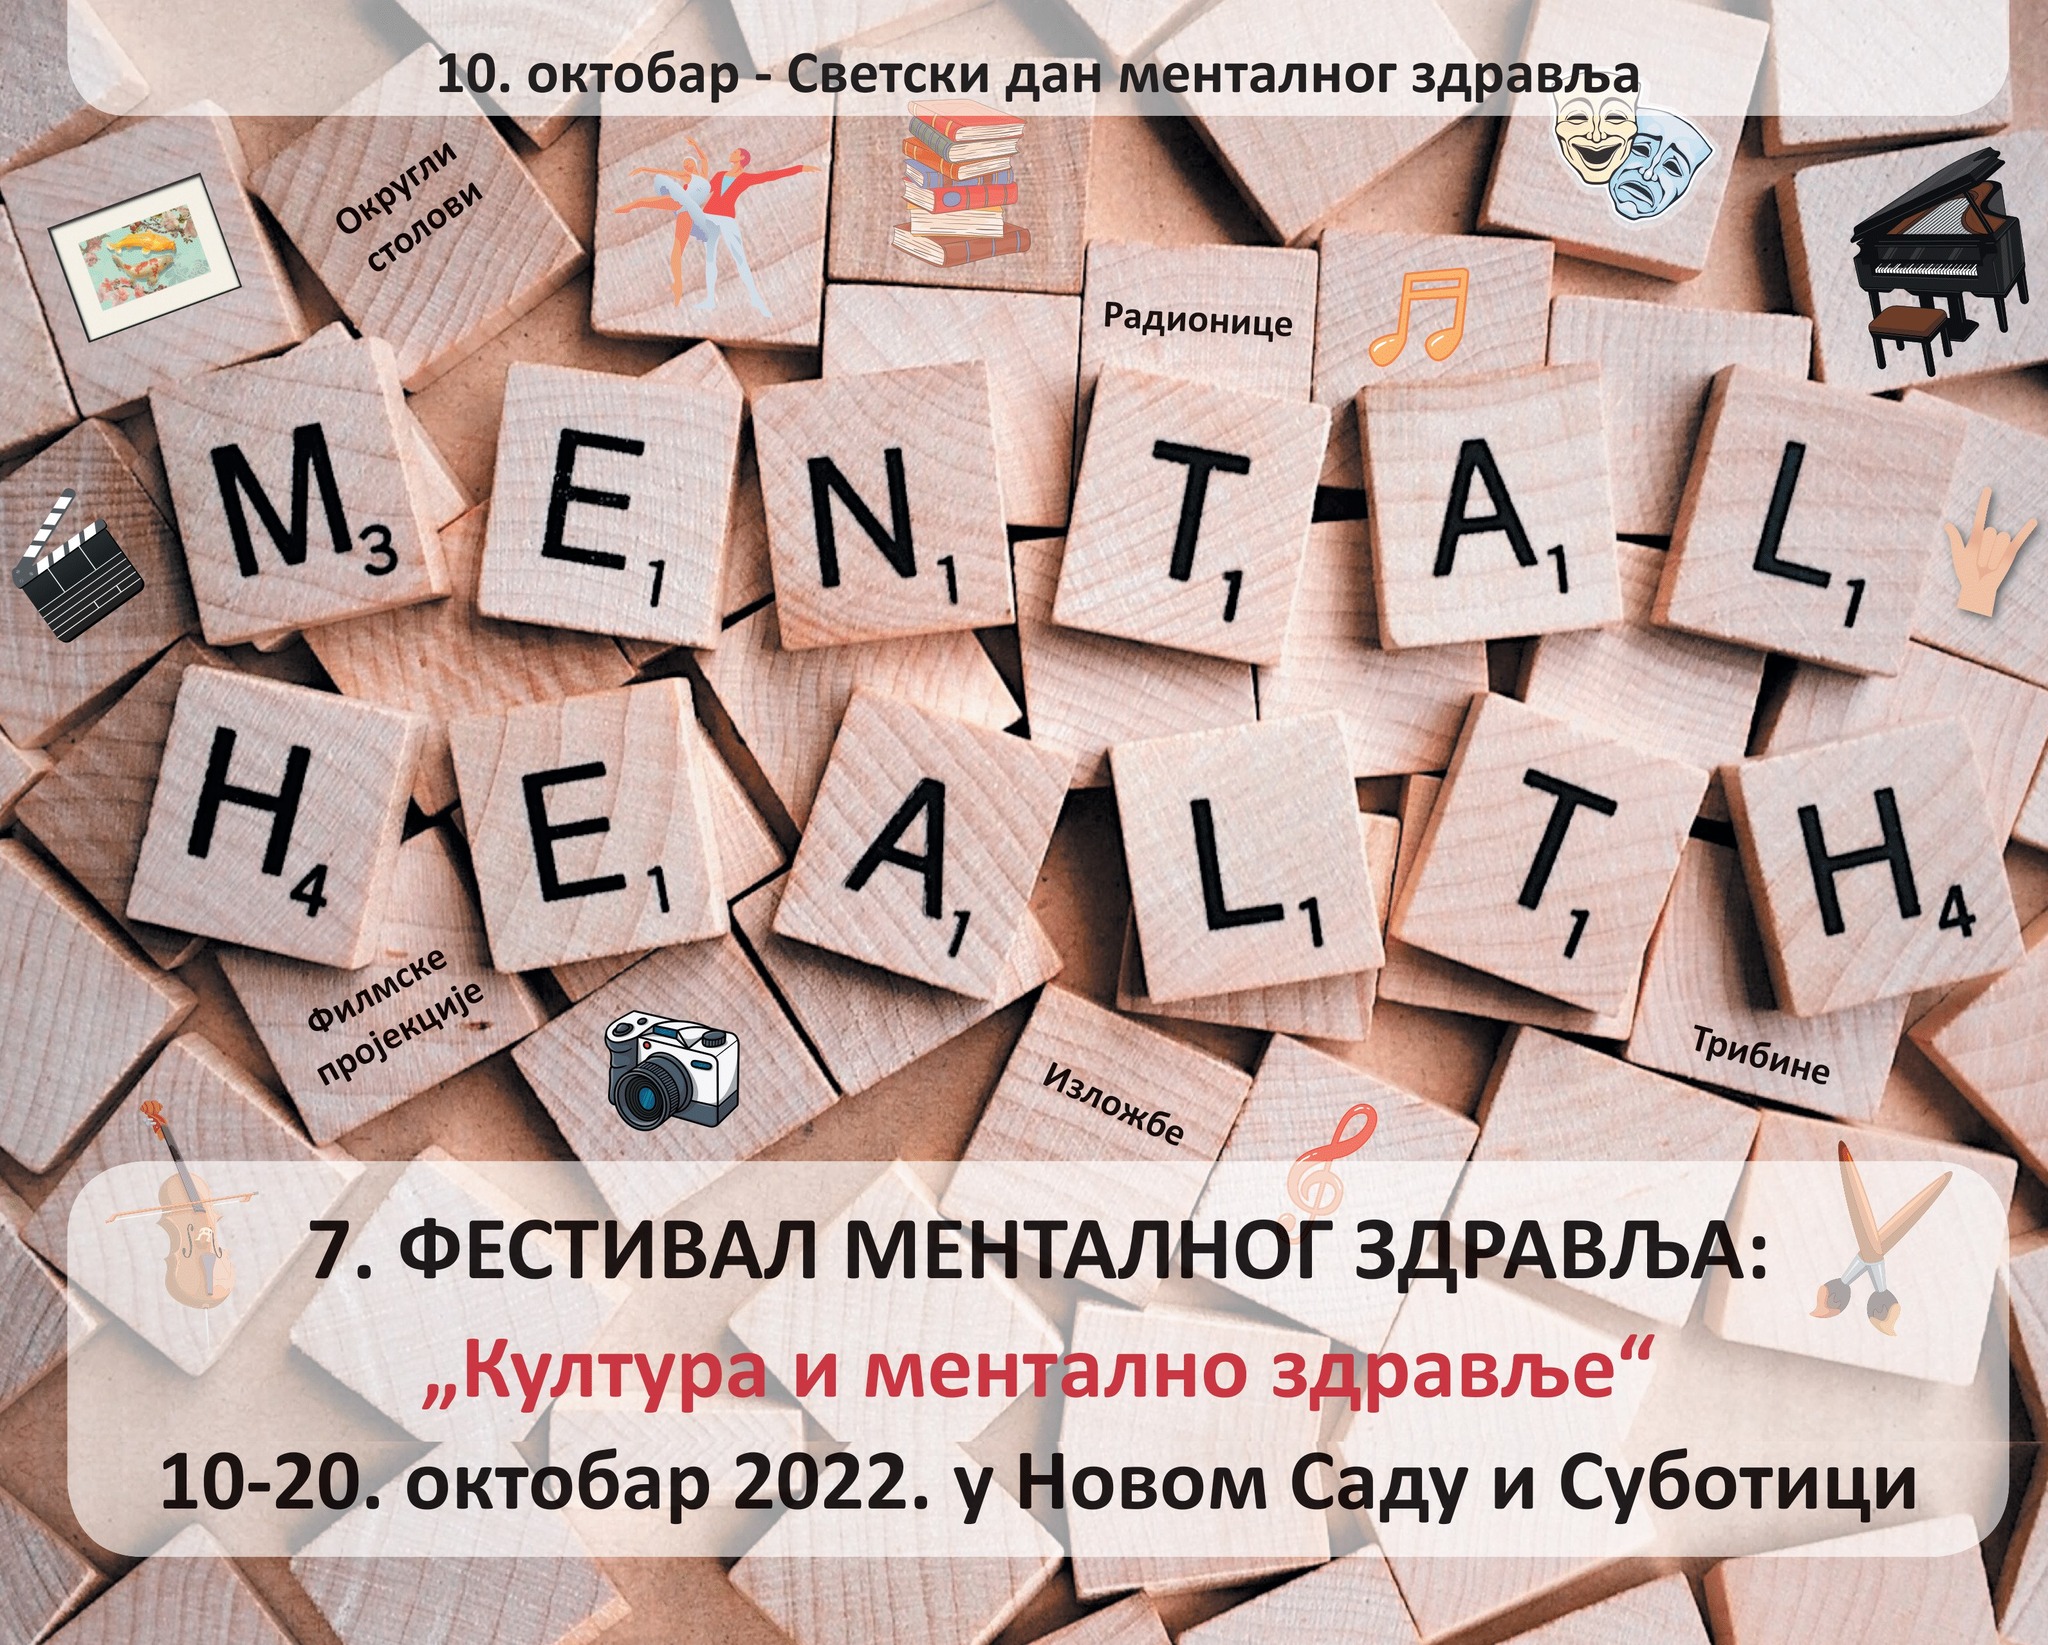 Festival mentalnog zdravlja u Novom Sadu, Subotici i onlajn